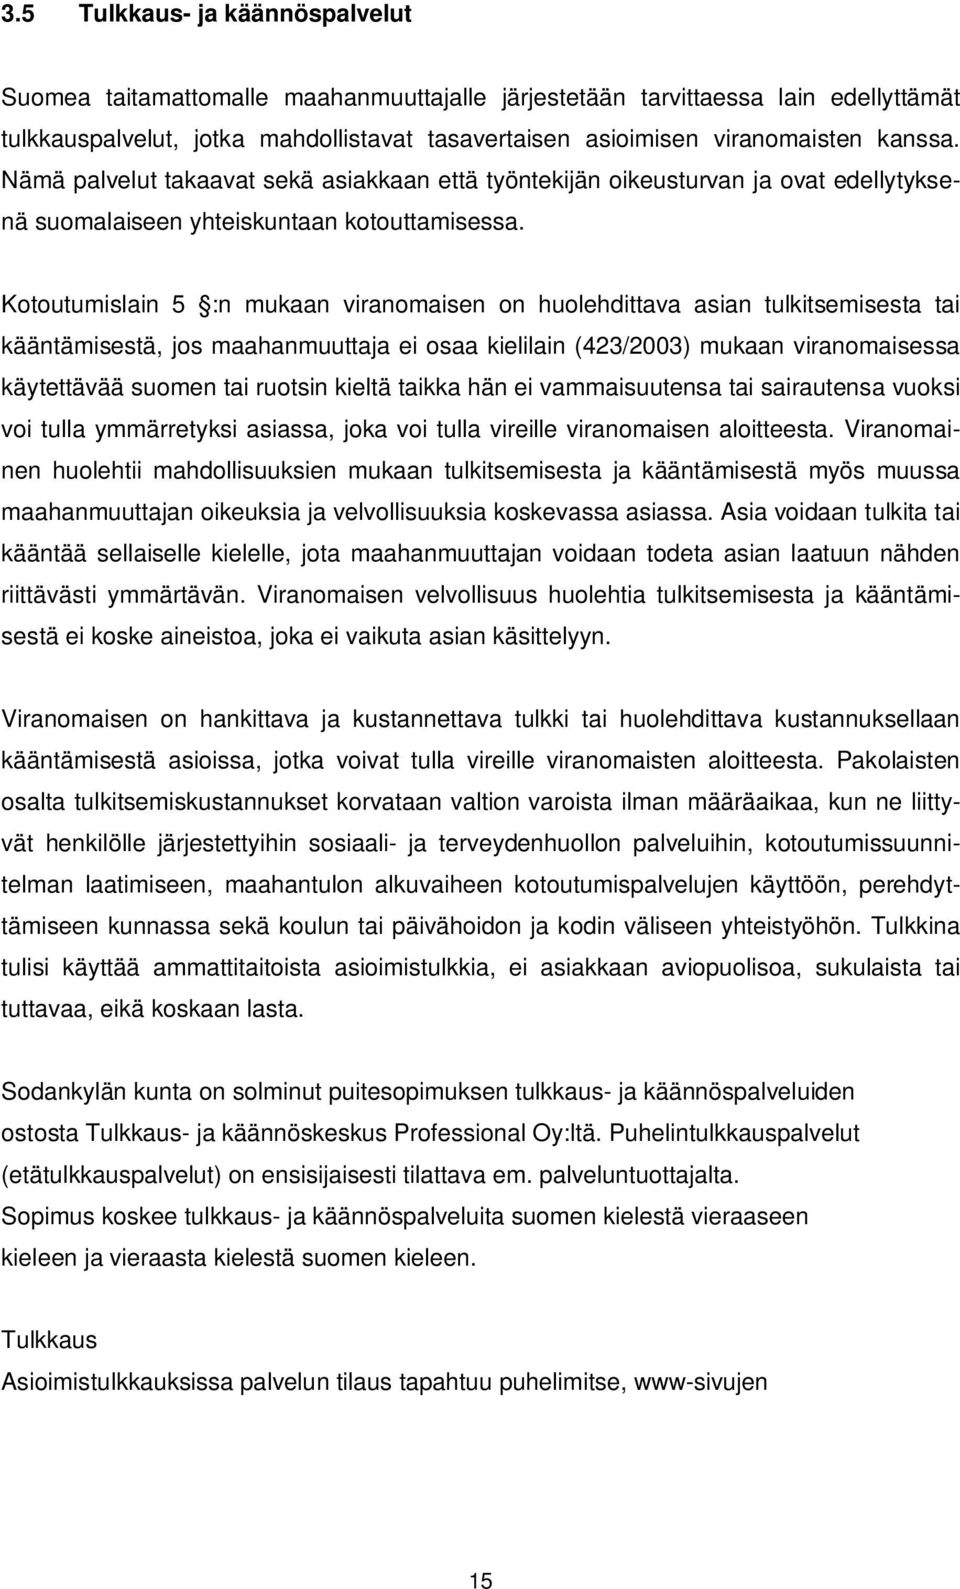 Kotoutumislain 5 :n mukaan viranomaisen on huolehdittava asian tulkitsemisesta tai kääntämisestä, jos maahanmuuttaja ei osaa kielilain (423/2003) mukaan viranomaisessa käytettävää suomen tai ruotsin